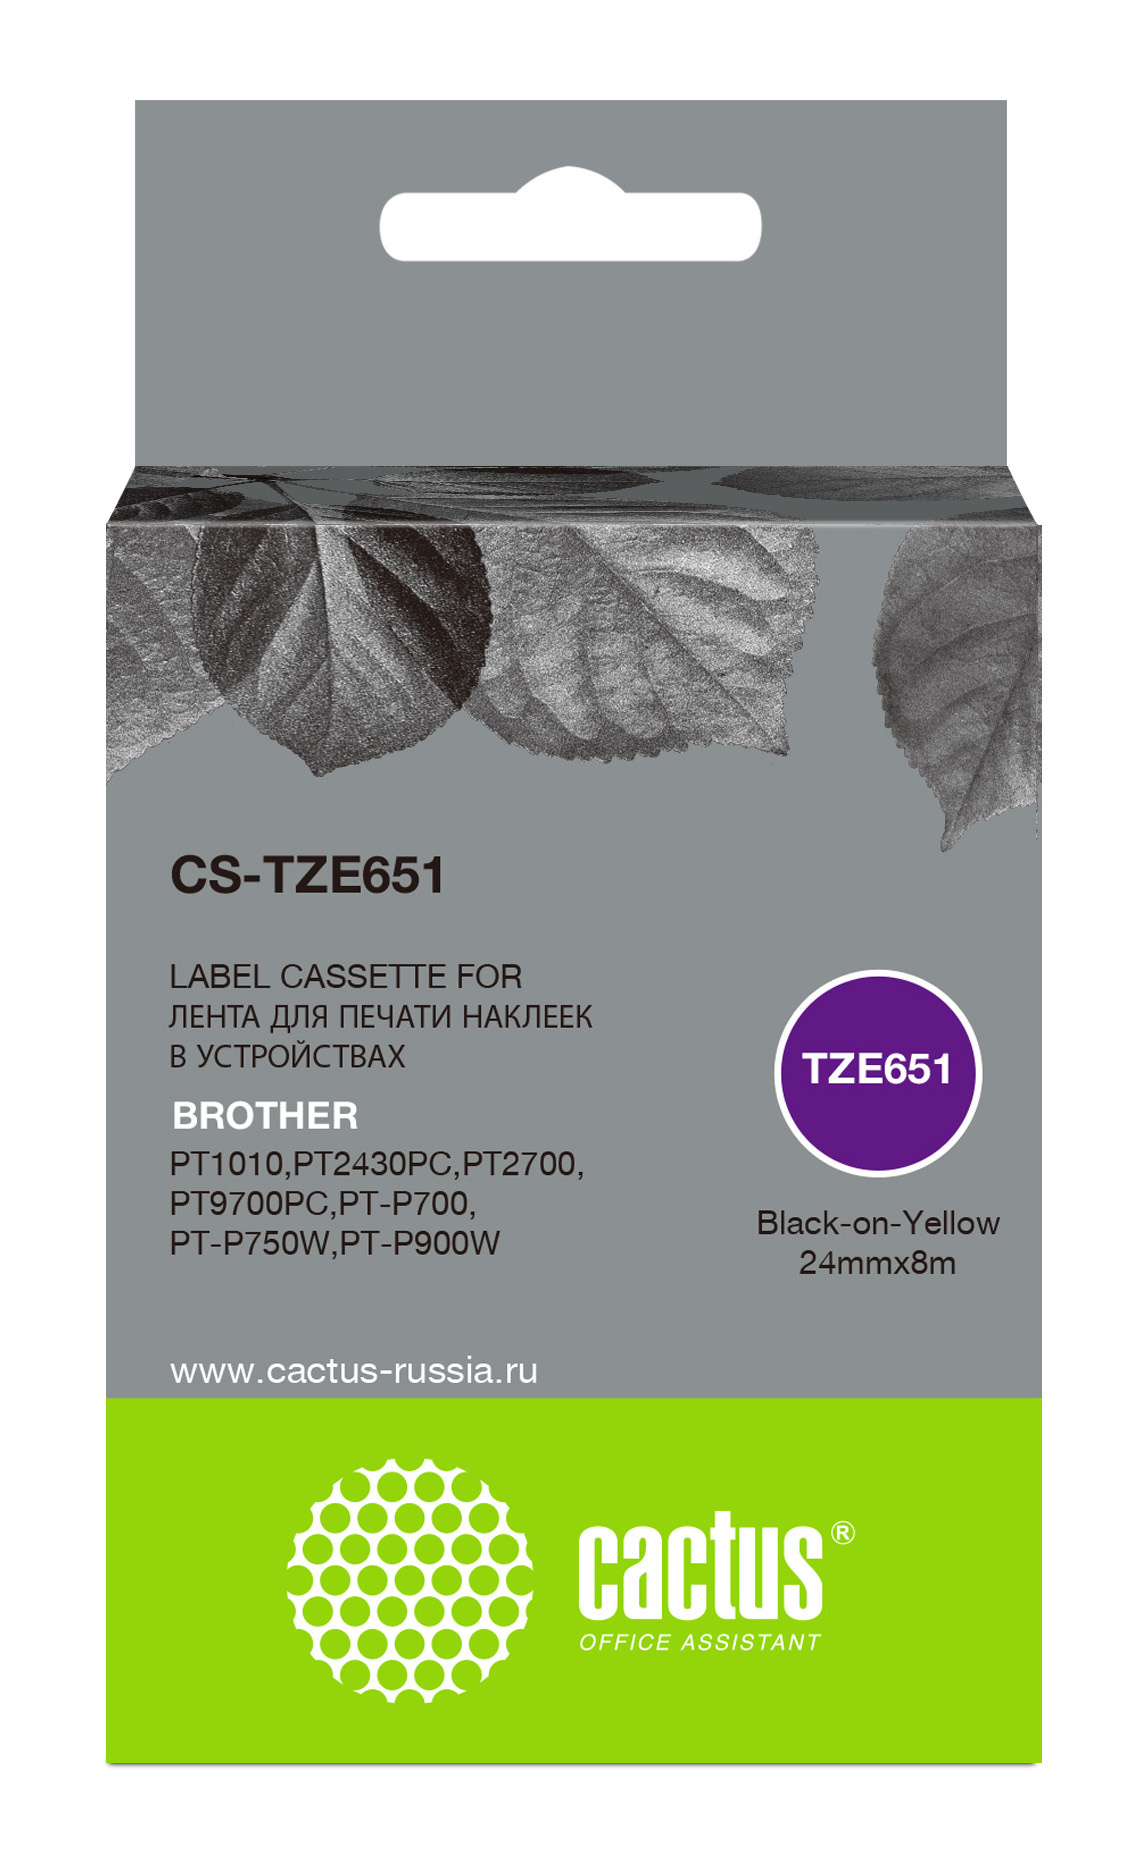 Кассета с наклейками Cactus CS-TZE651, 2.4 см x 8 м, черный на желтом, совместимая